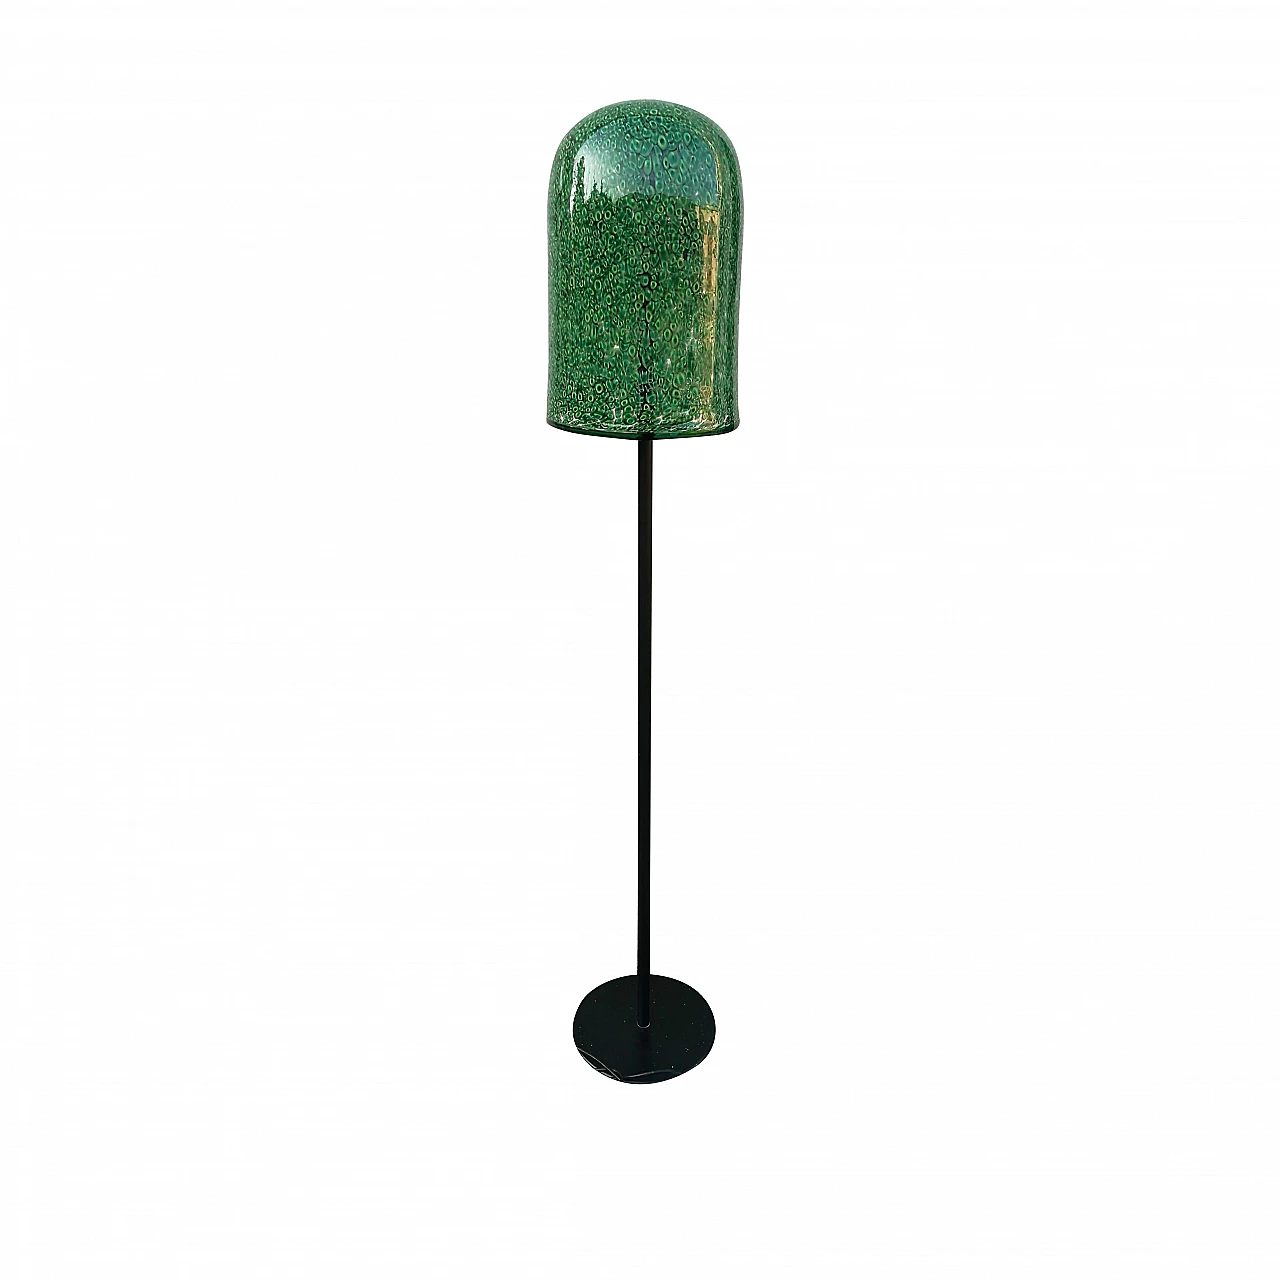 Murano glass floor lamp by Gae Aulenti for Vistosi 1976 1118540